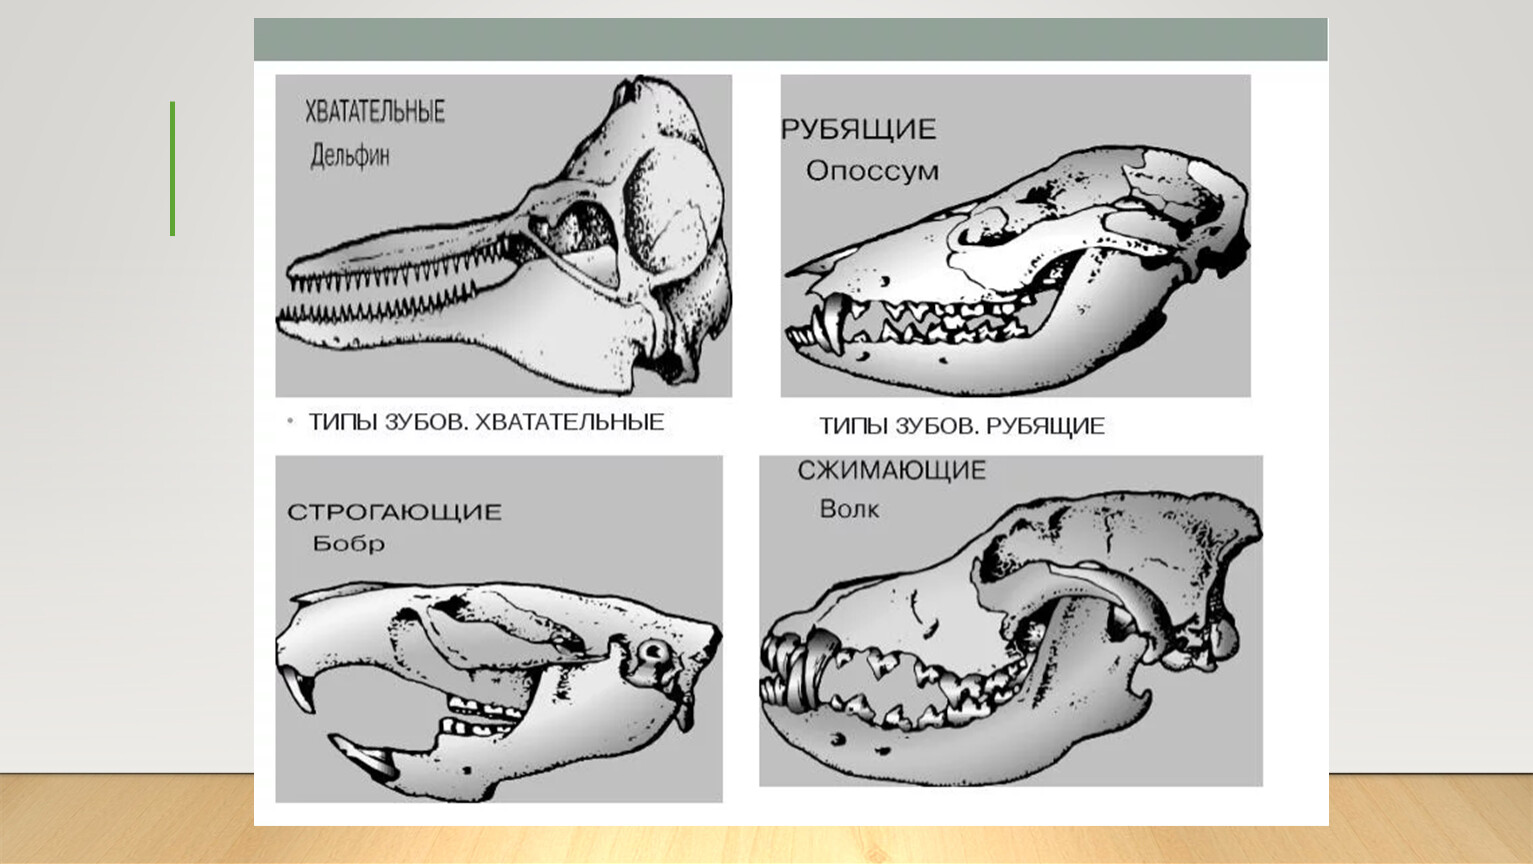 У кита альвеолярные легкие. Зубная система млекопитающих анатомия. Строение зубов млекопитающих зубная система. Зубные системы животных разных отрядов млекопитающих. Зубная система насекомоядных млекопитающих.